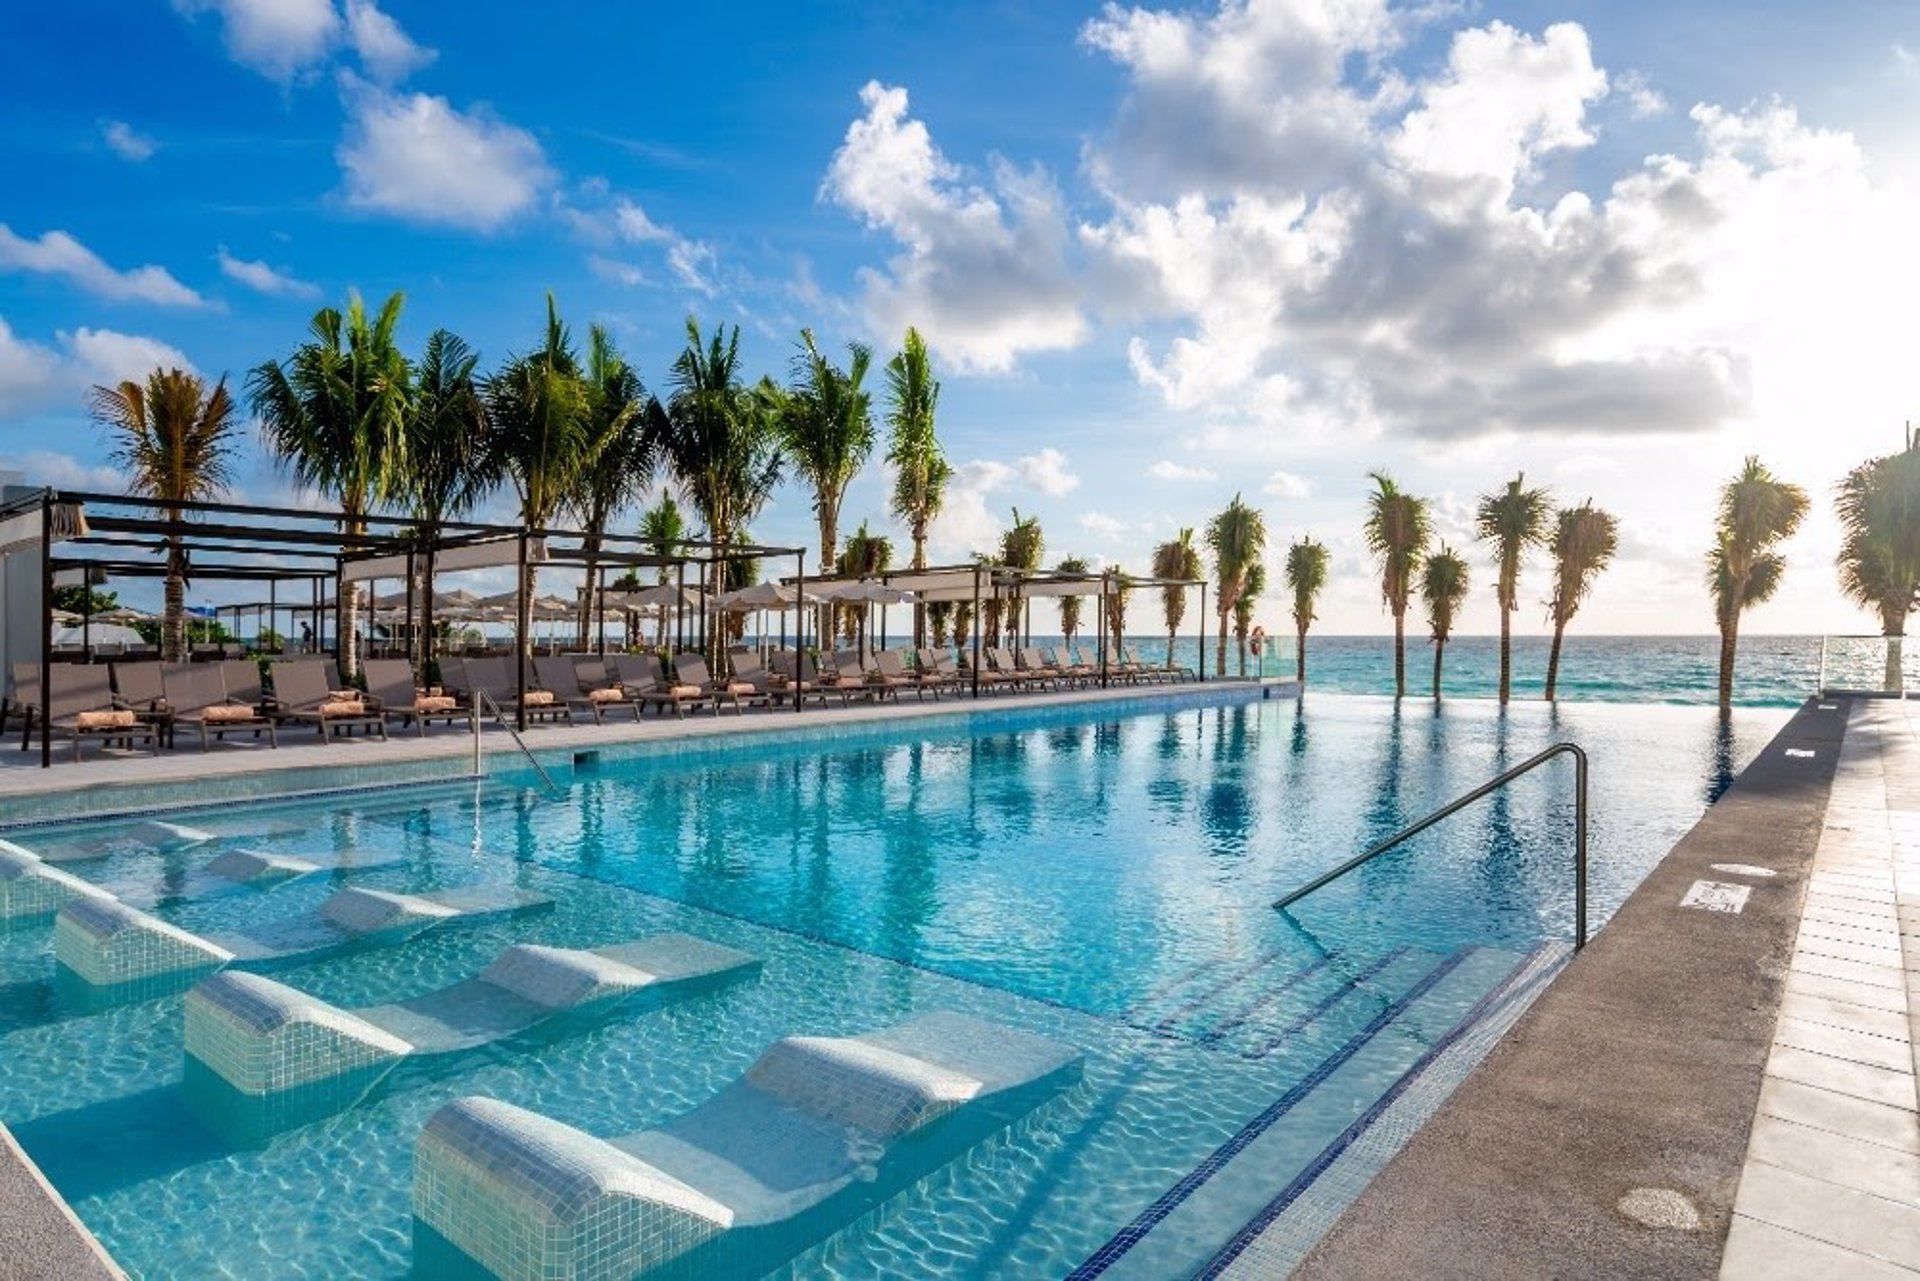 Riu abre el Riu Palace Kukulkan, su quinto hotel en Cancún y el número 22 en México - RIU HOTELS AND RESORTS